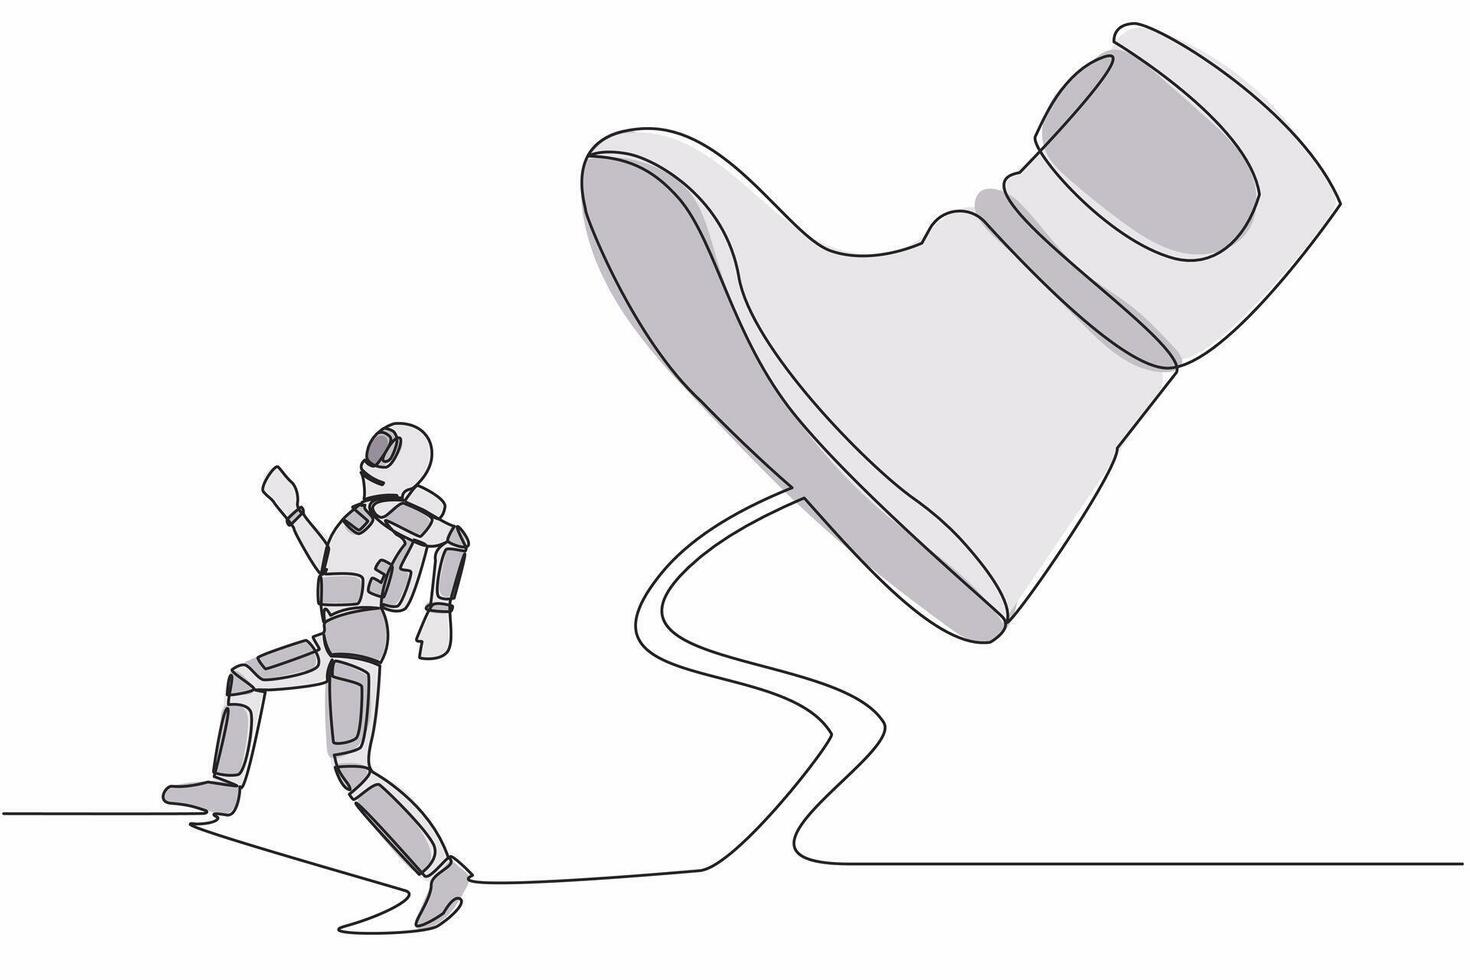 kontinuierlich einer Linie Zeichnung jung Astronaut Lauf Weg von stampfen Fuß. Raumfahrer unterdrückt durch Boss mit unter groß Schuh. Kosmonaut äußere Raum Konzept. Single Linie Grafik Design Vektor Illustration